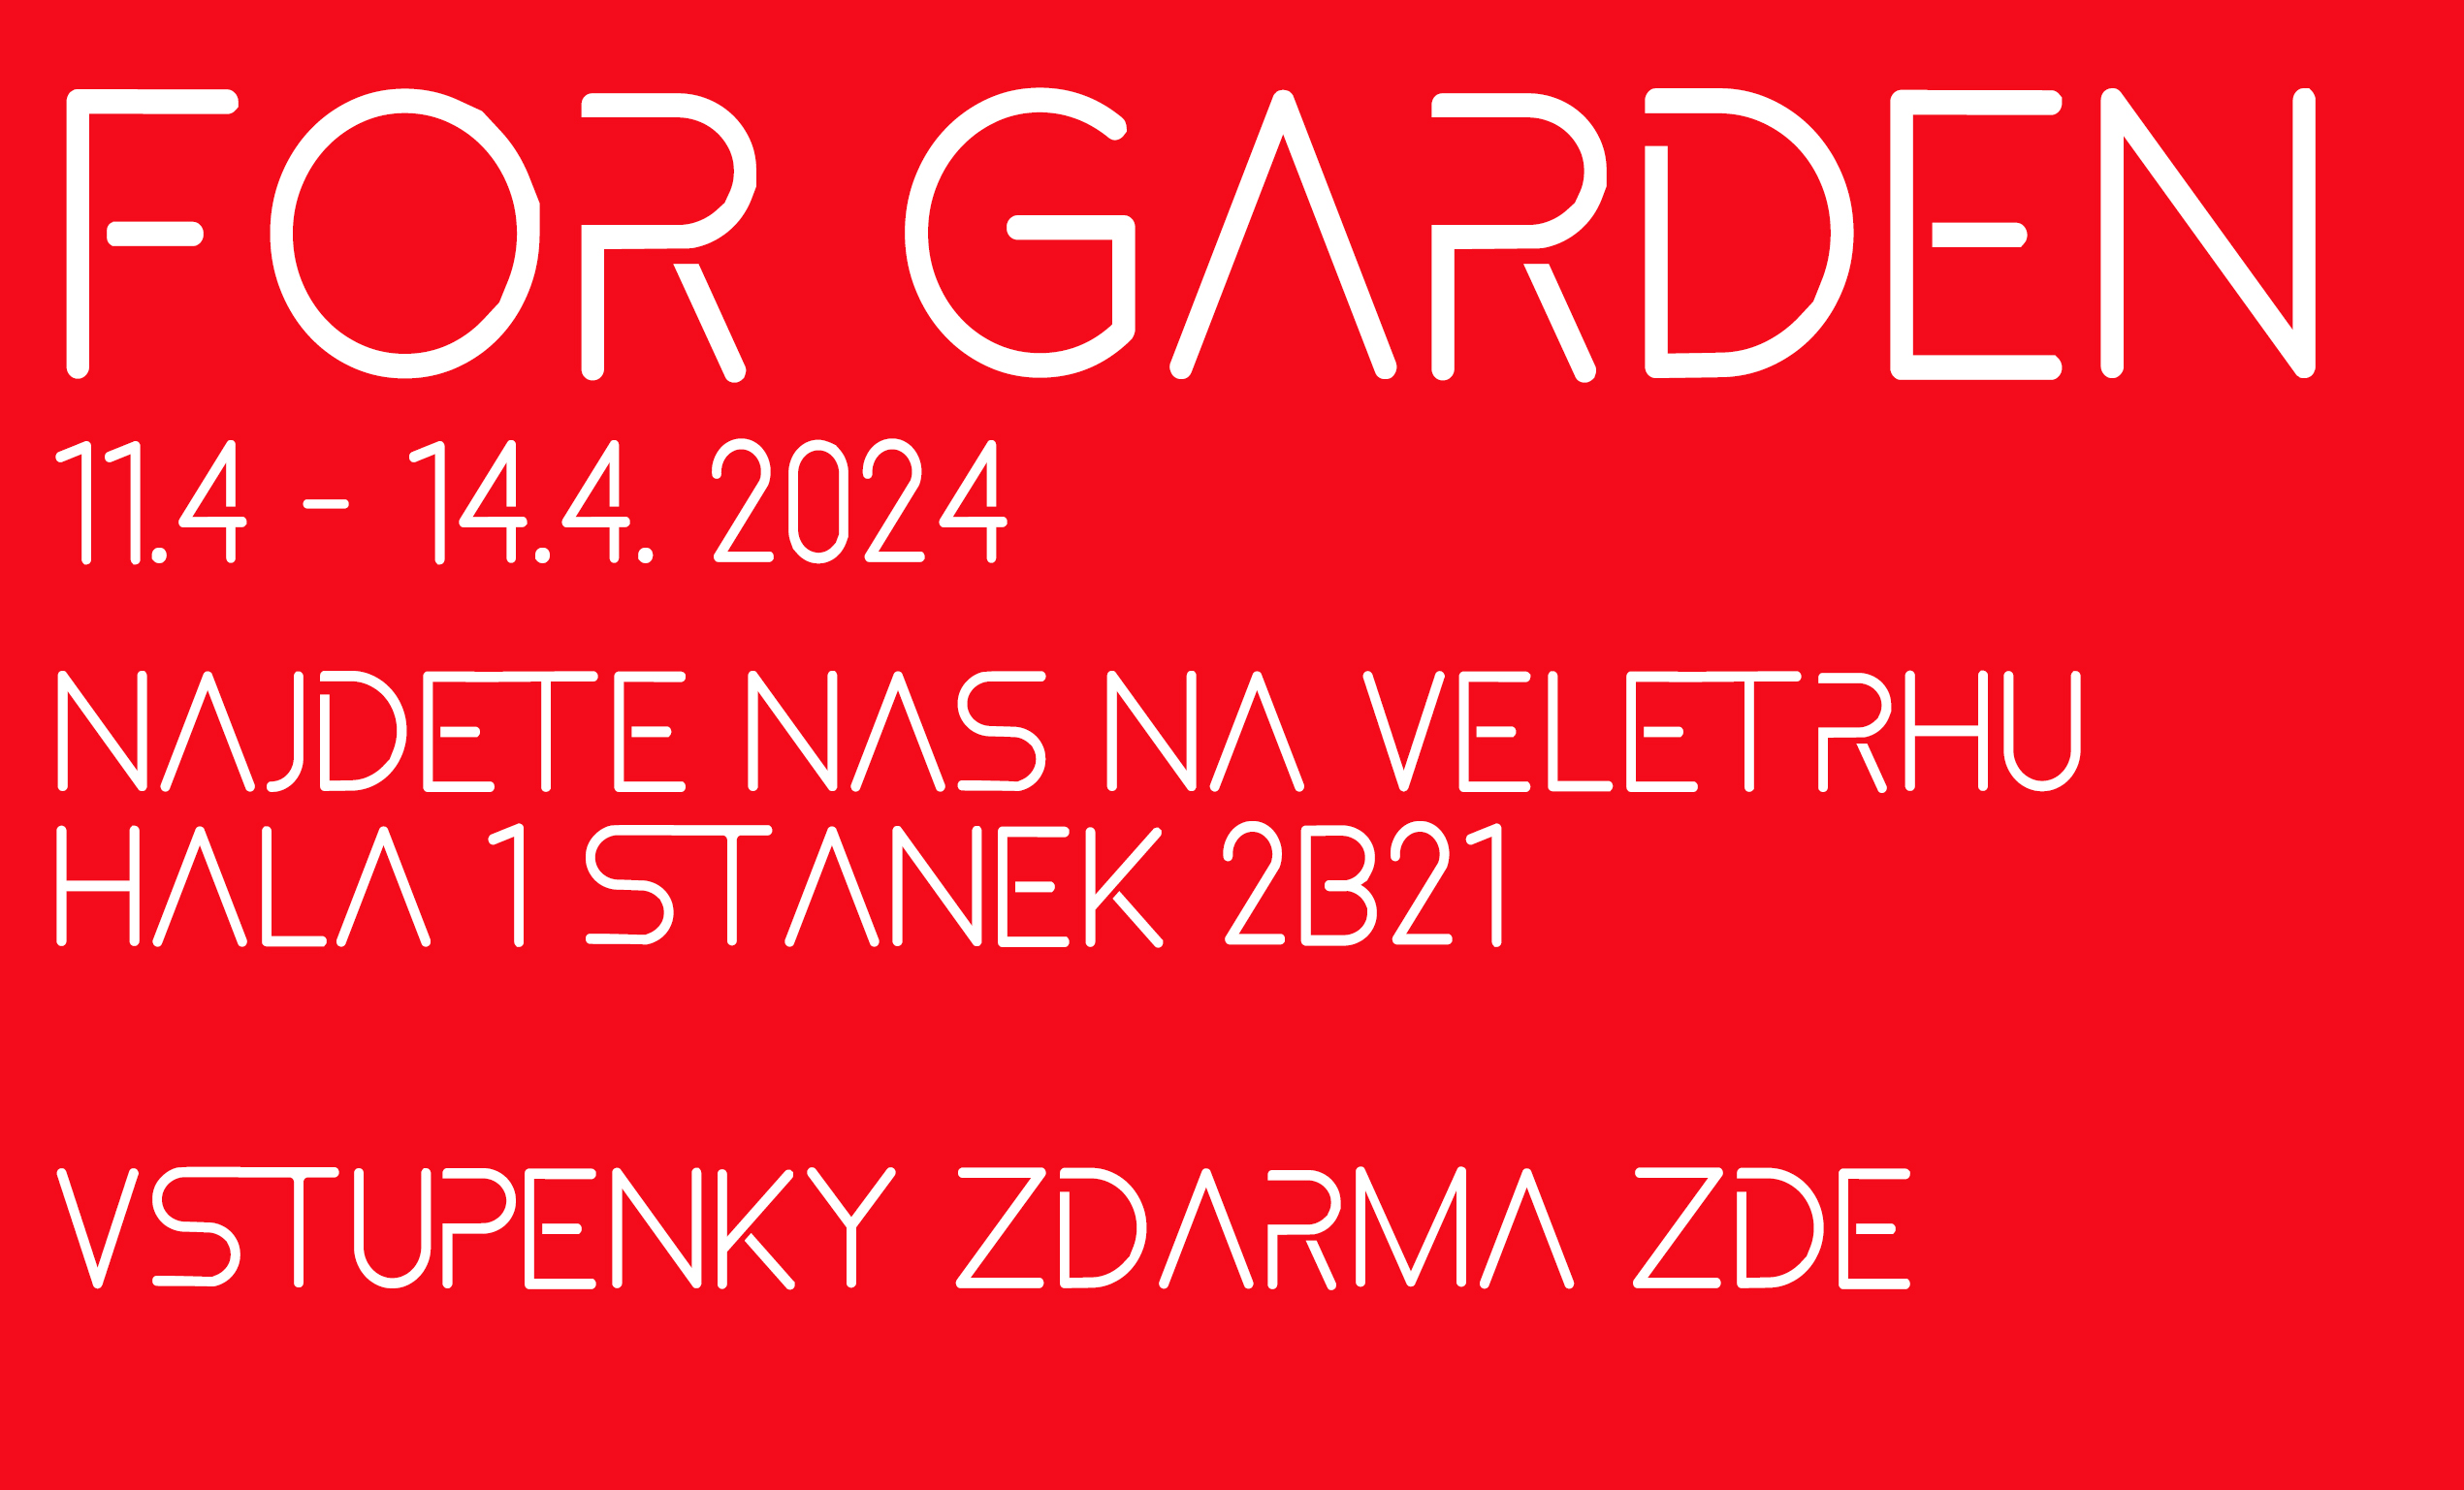 For Garden 2024